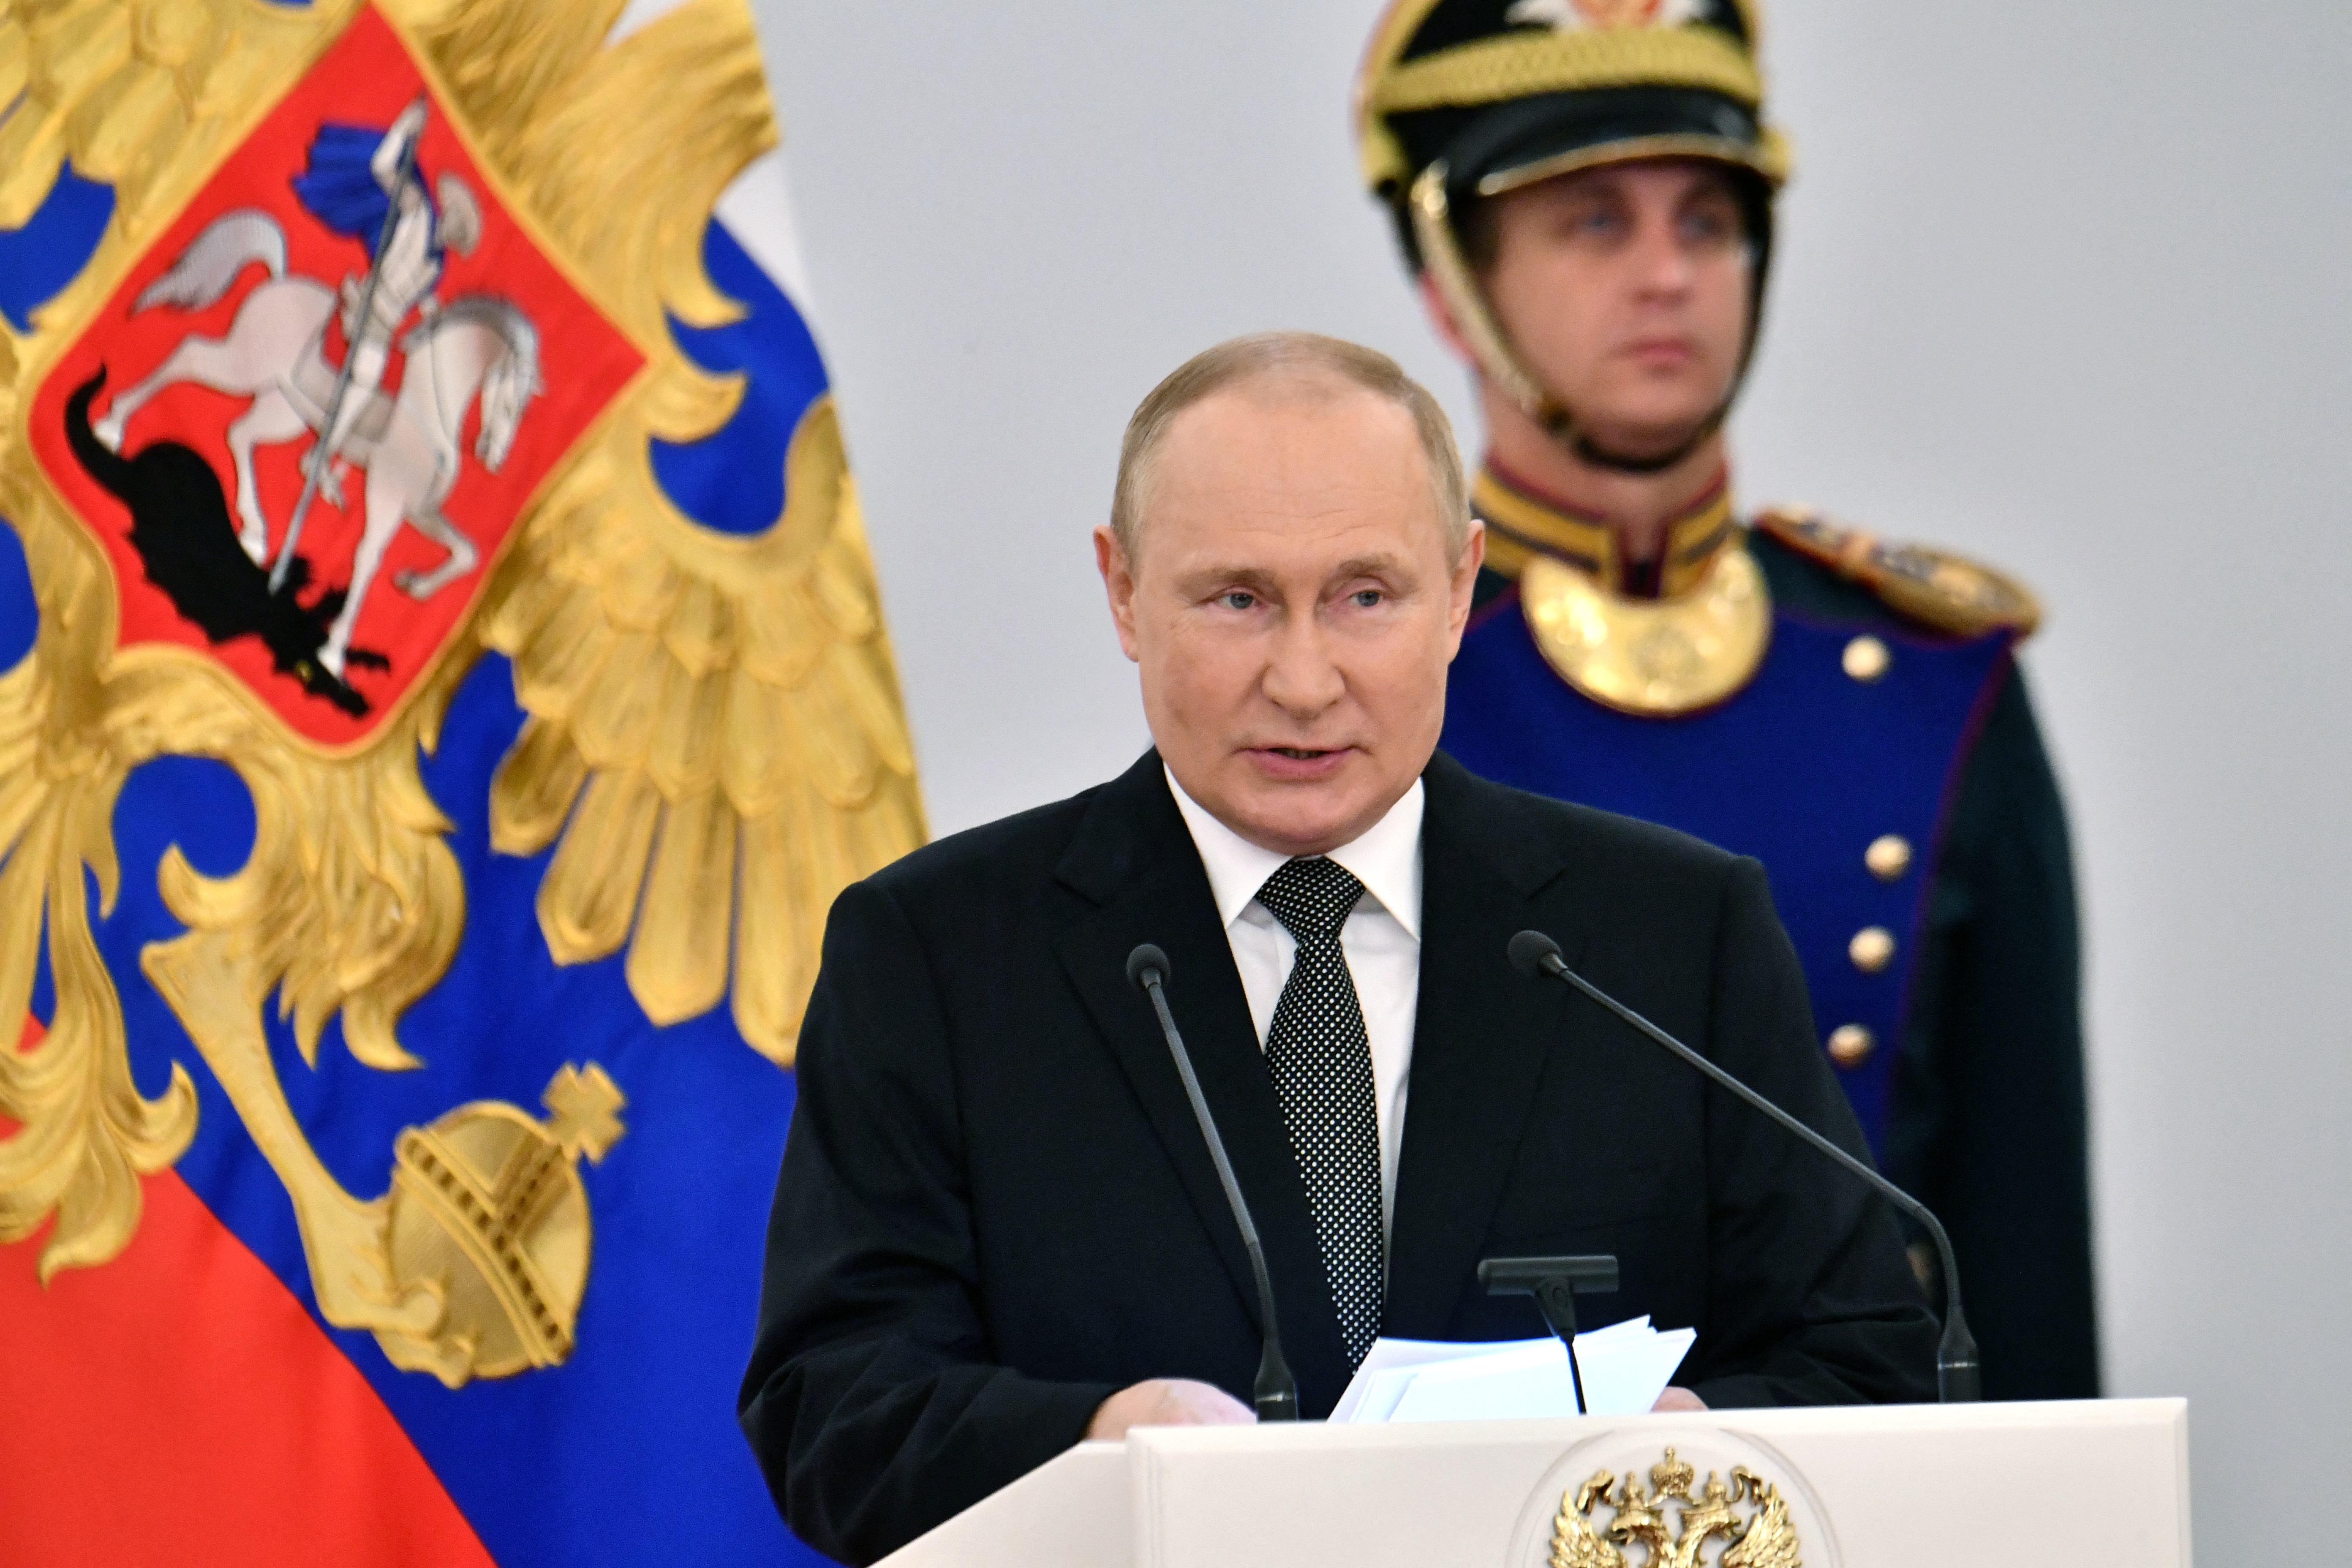 El Papa pareció acercarse a las posturas de Vladimir Putin, aunque luego lo negó